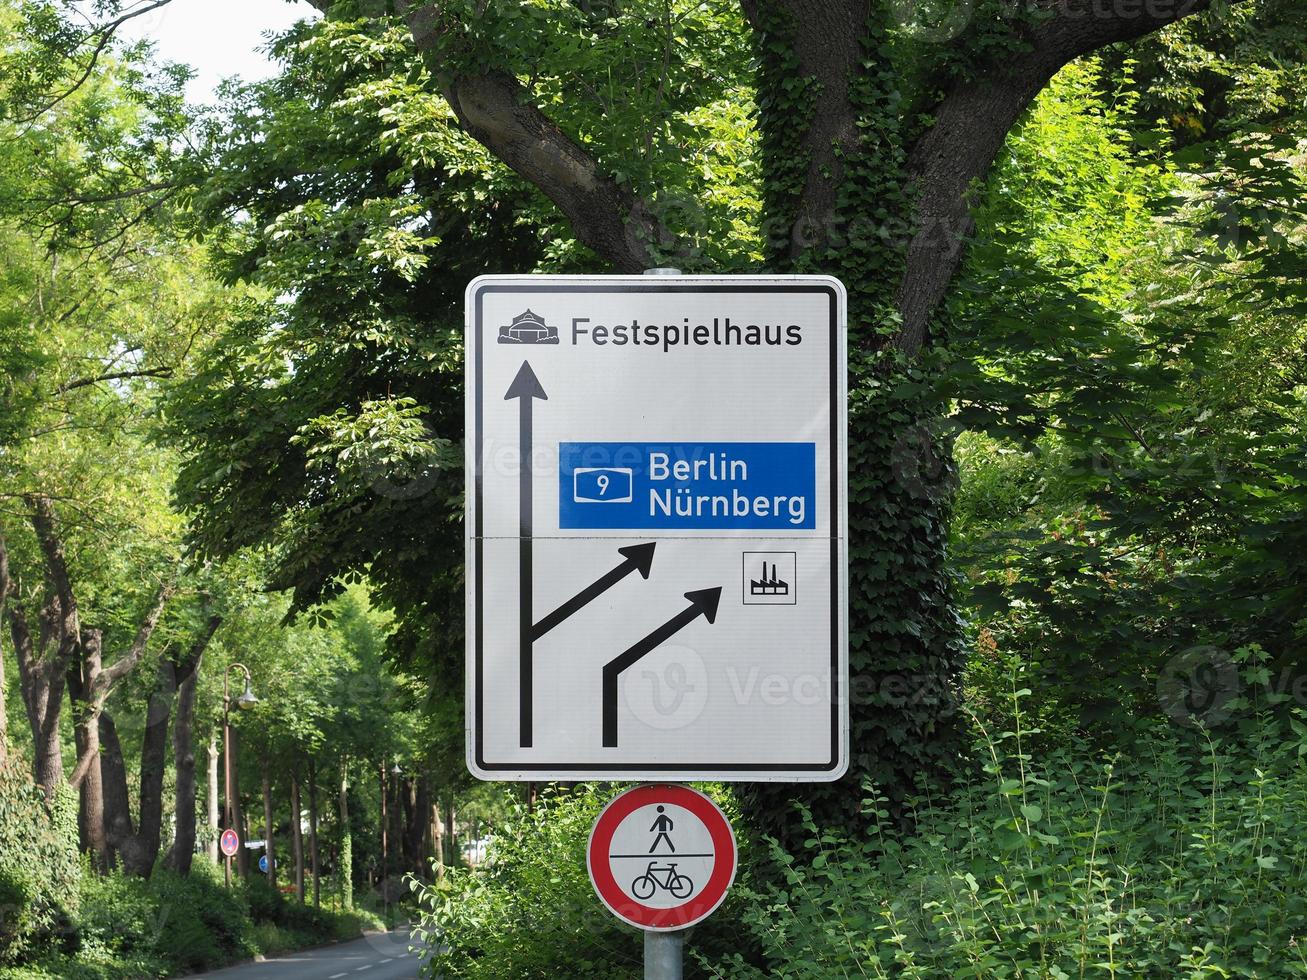 festspielhaus översättning festival hall trafikskylt foto